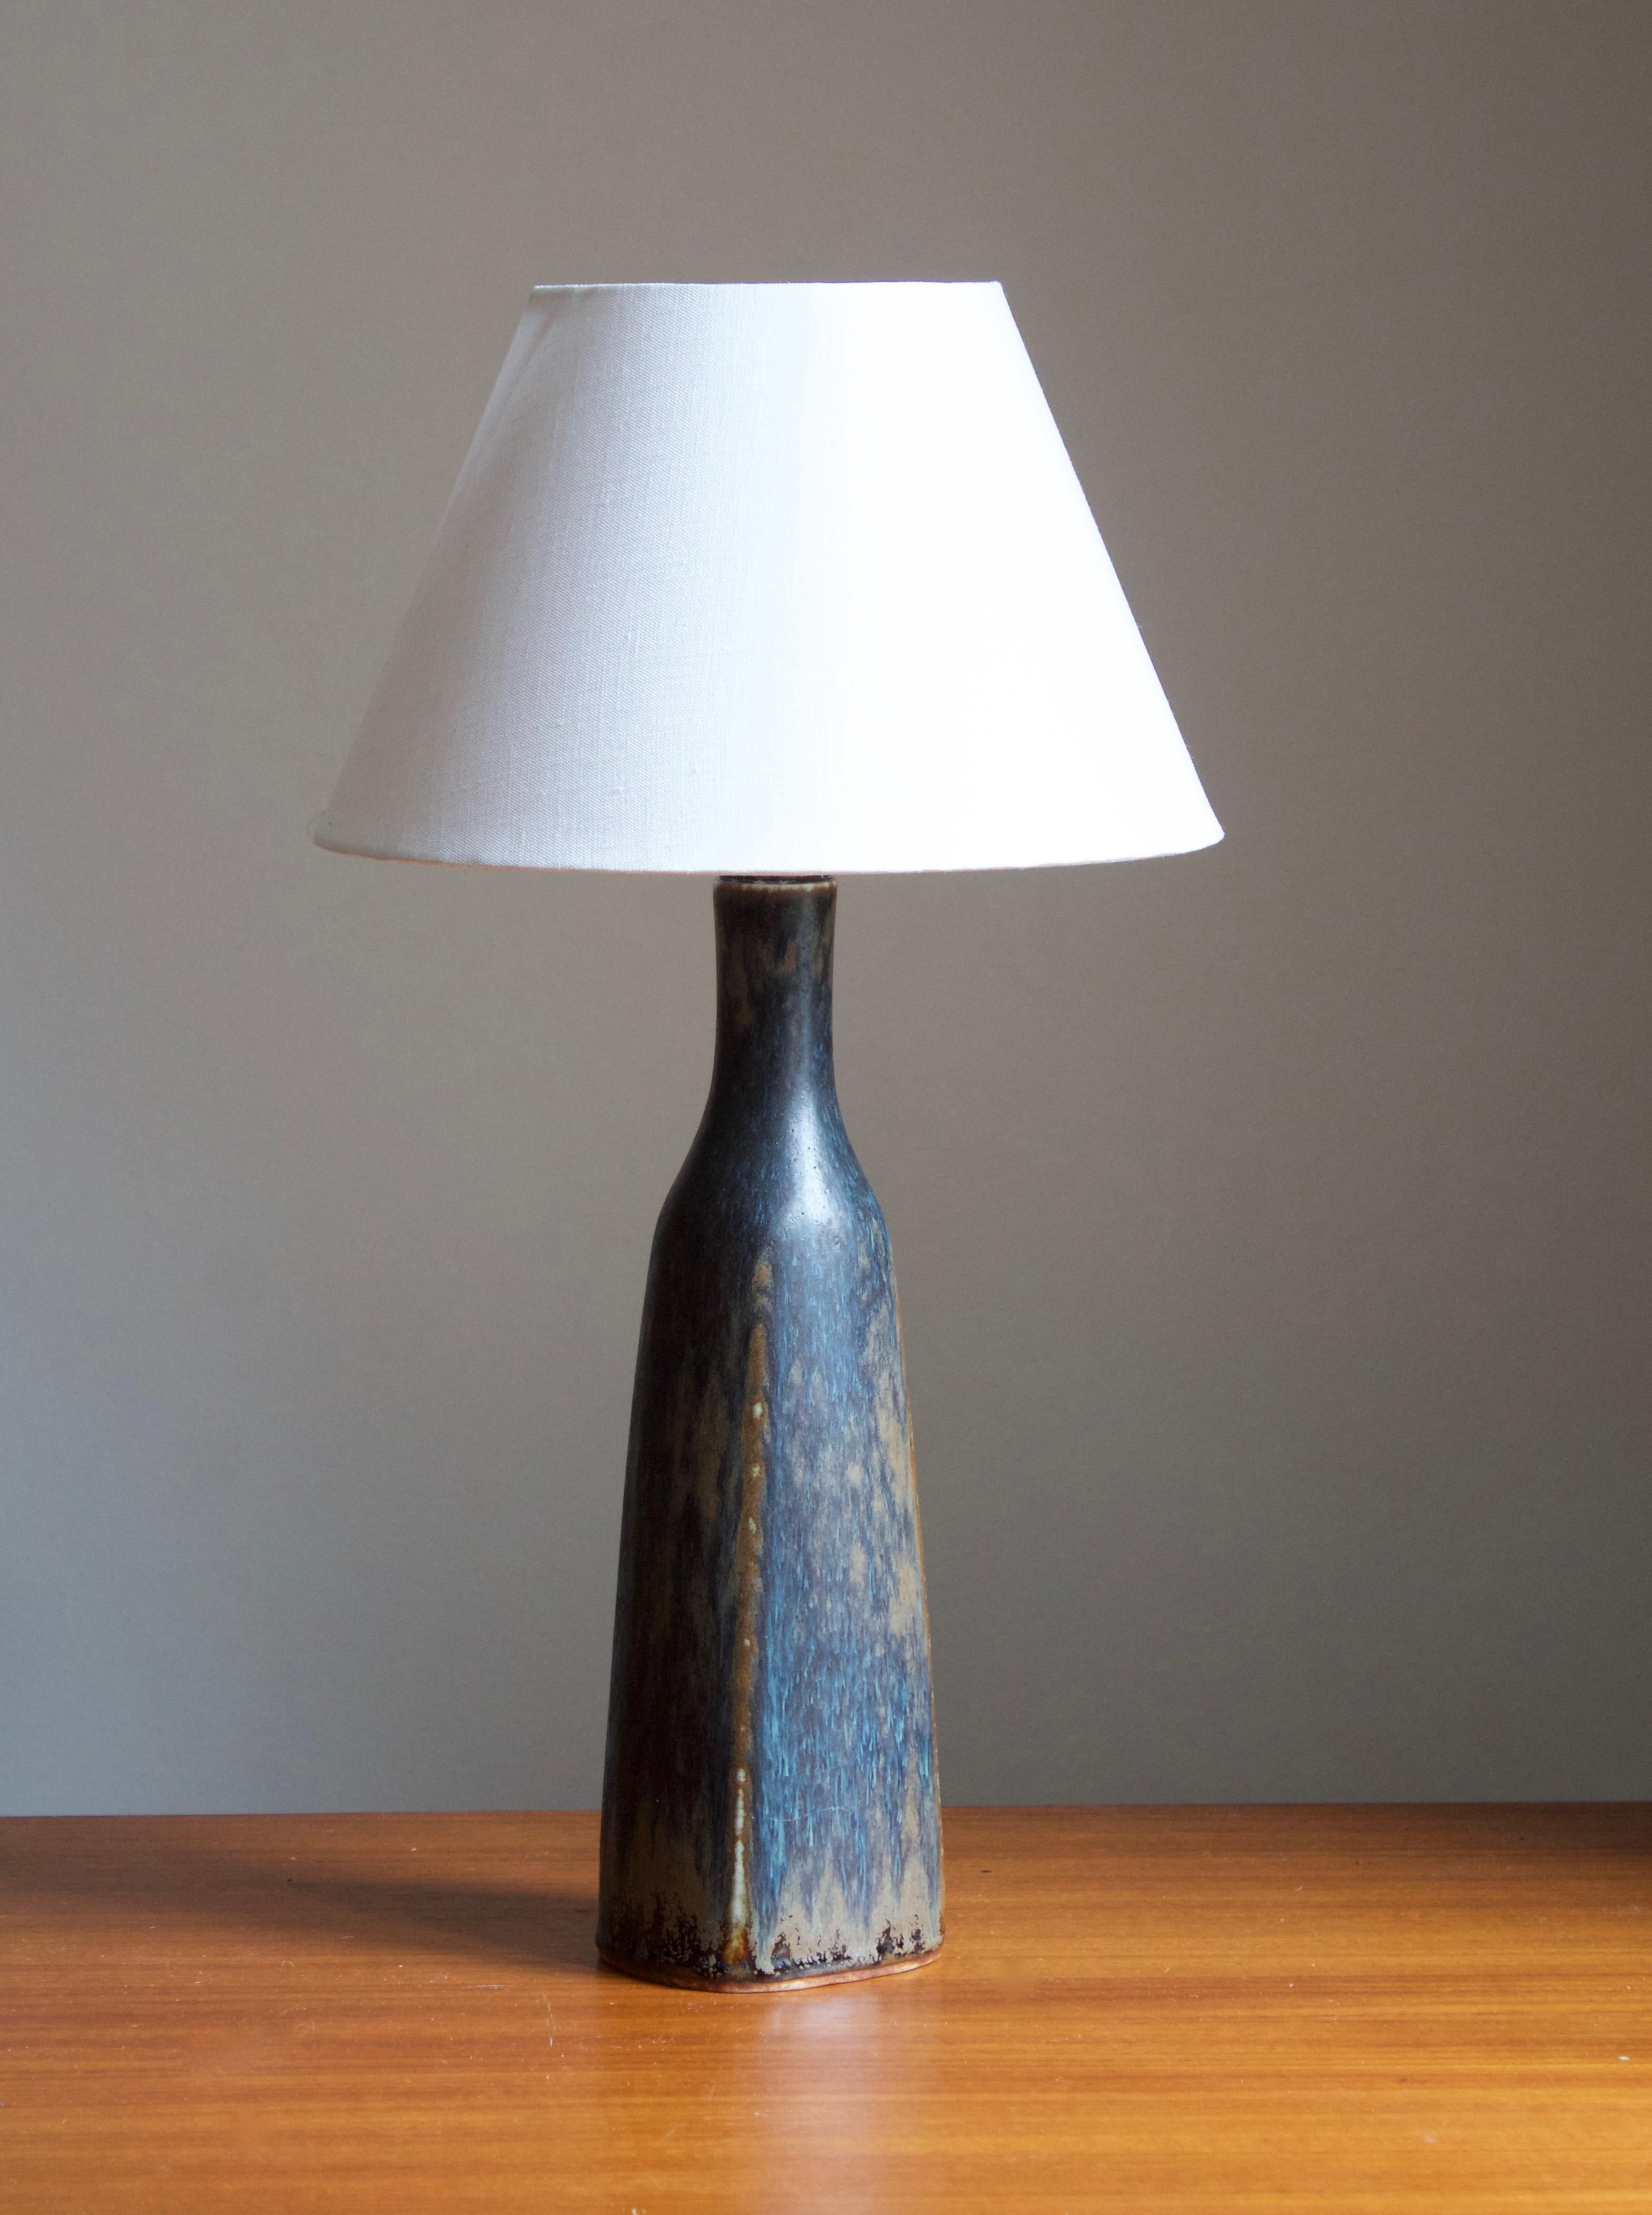 Une lampe de table par Carl-Harry Stålhane pour la firme suédoise emblématique Rörstrand. 

Les dimensions indiquées ne comprennent pas l'abat-jour. La hauteur inclut la douille. Vendu sans abat-jour.

Le vernis présente des couleurs